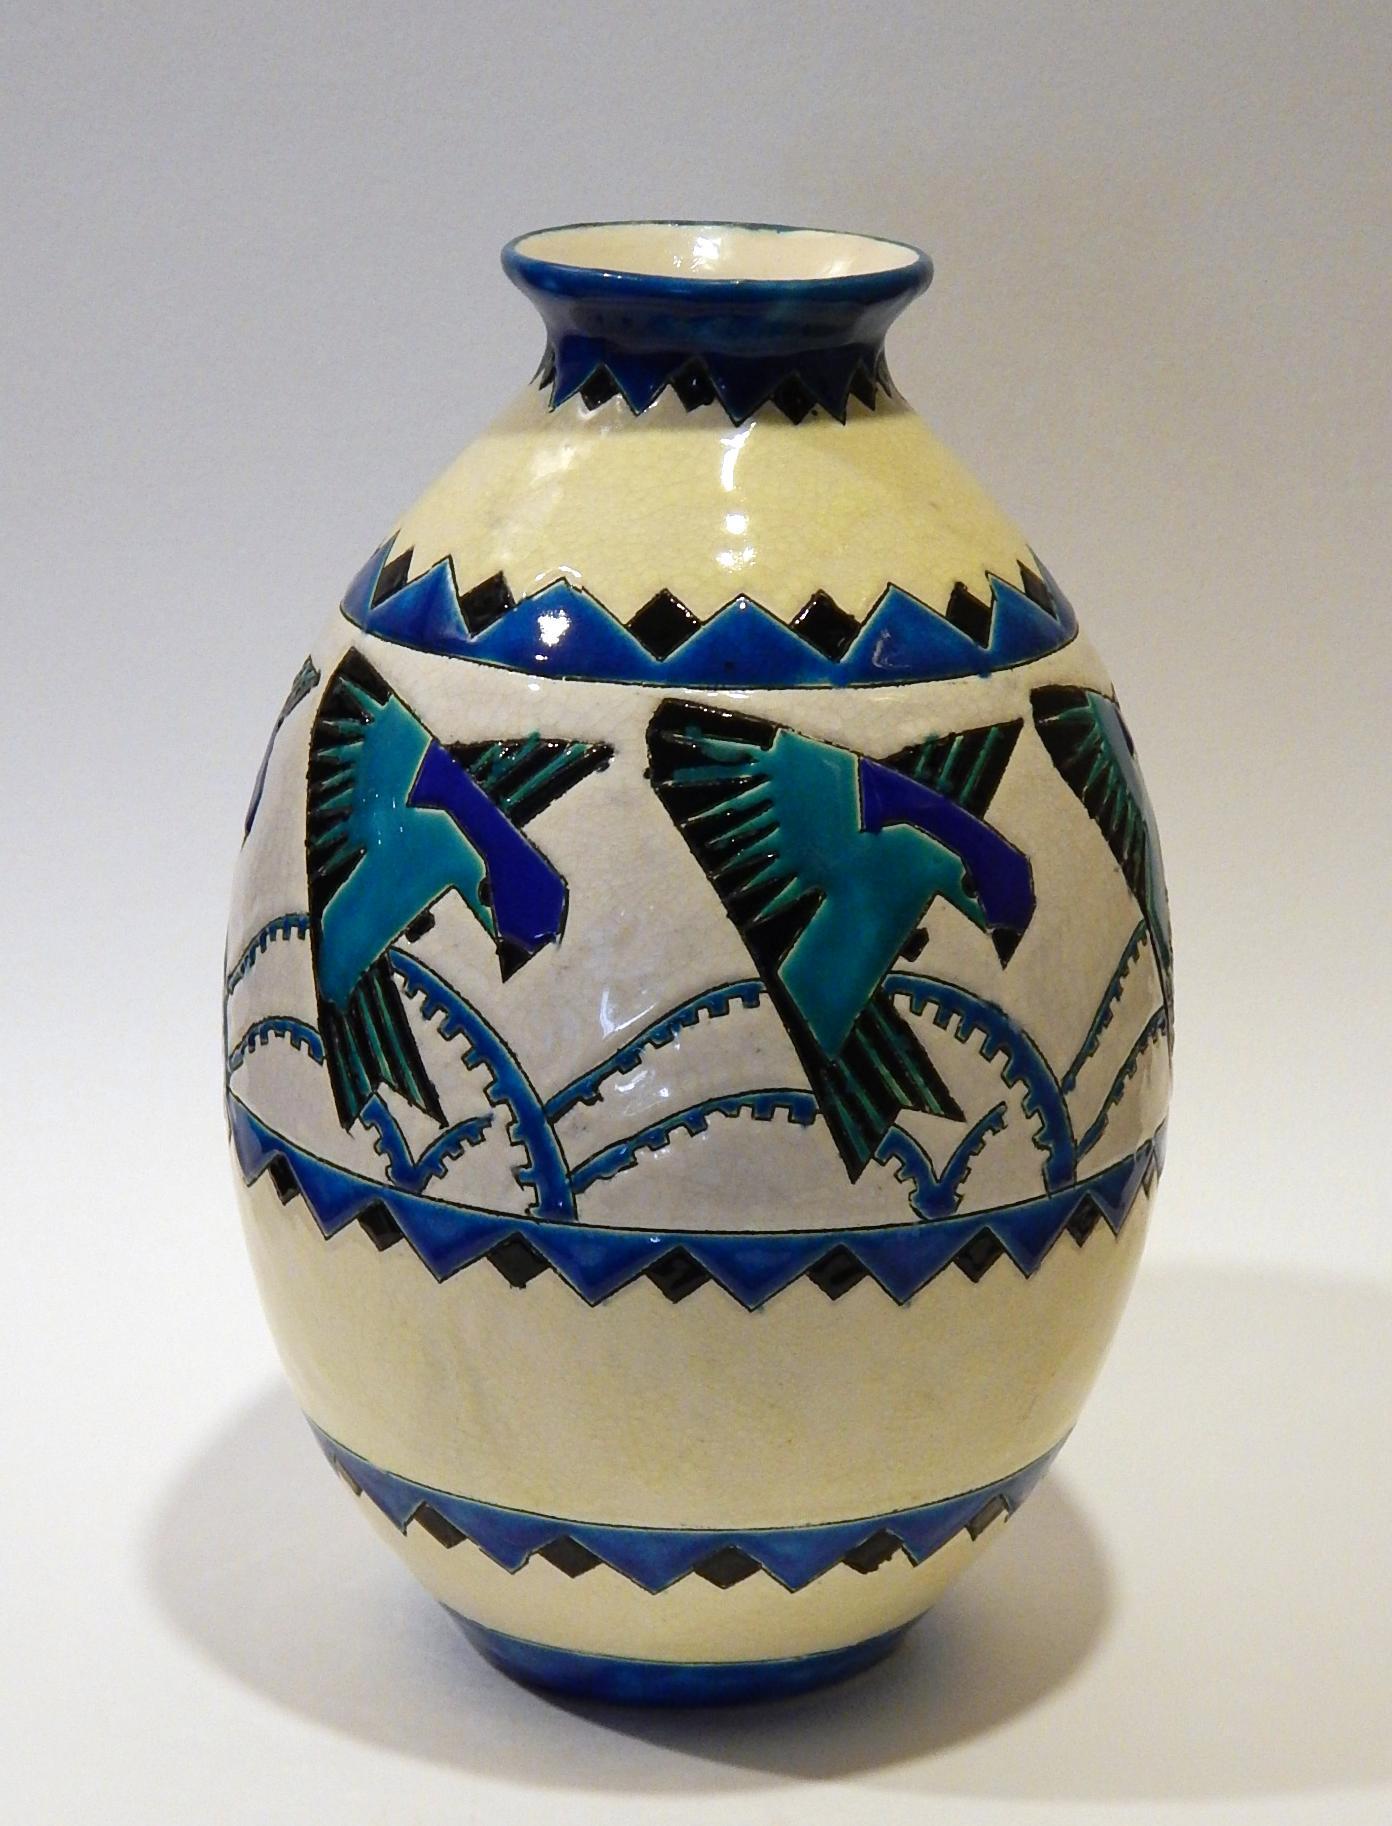 Schöne Keramis-Vase mit sich wiederholendem stilisiertem Vogelmotiv in der Mitte.
Maße: 12